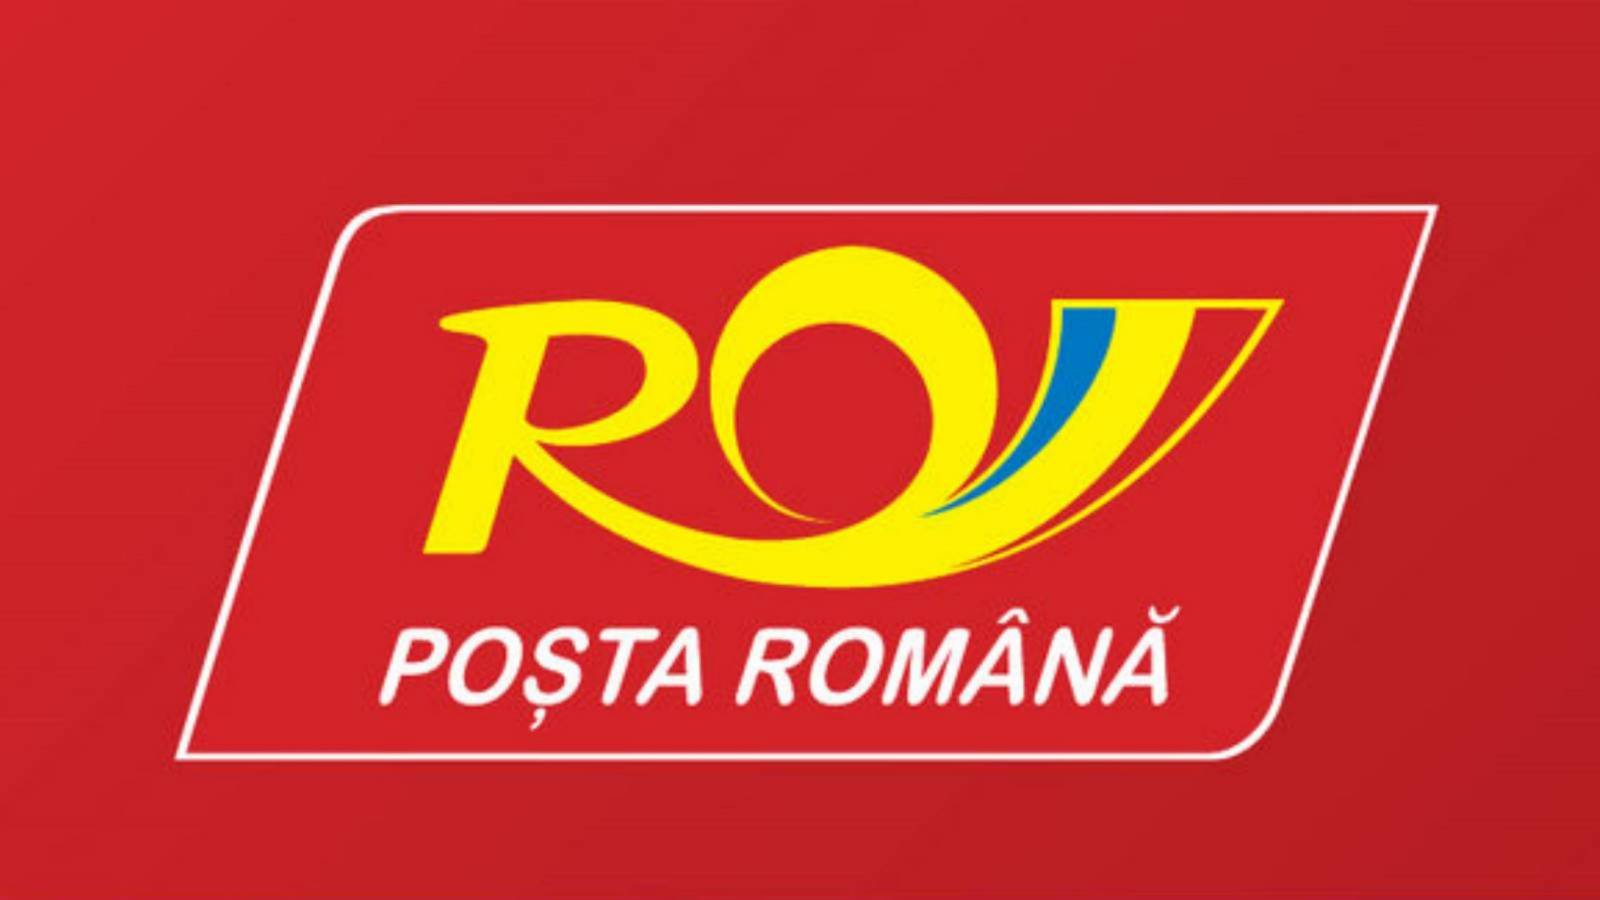 Posta Romania consente i timbri di immatricolazione delle automobili